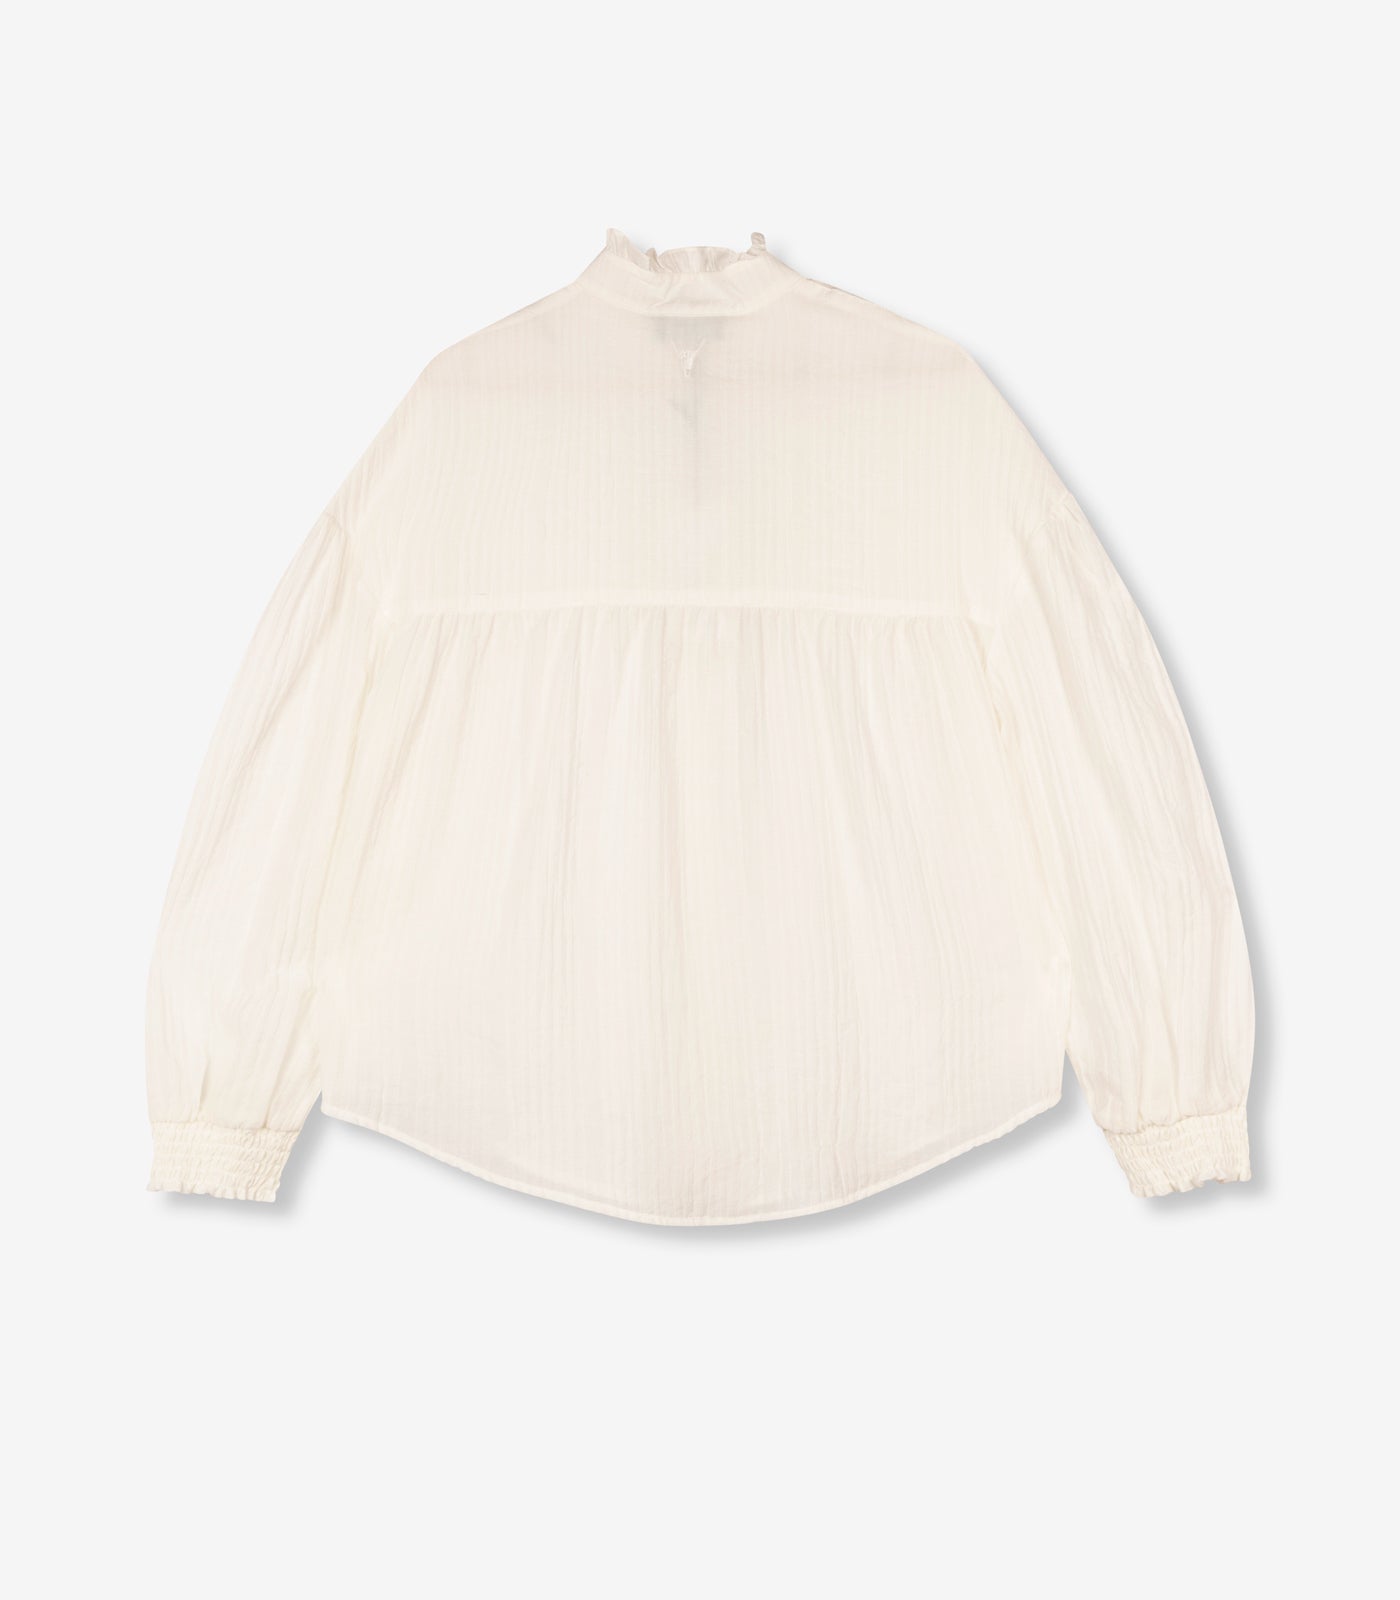 Oversized blouse - soft white